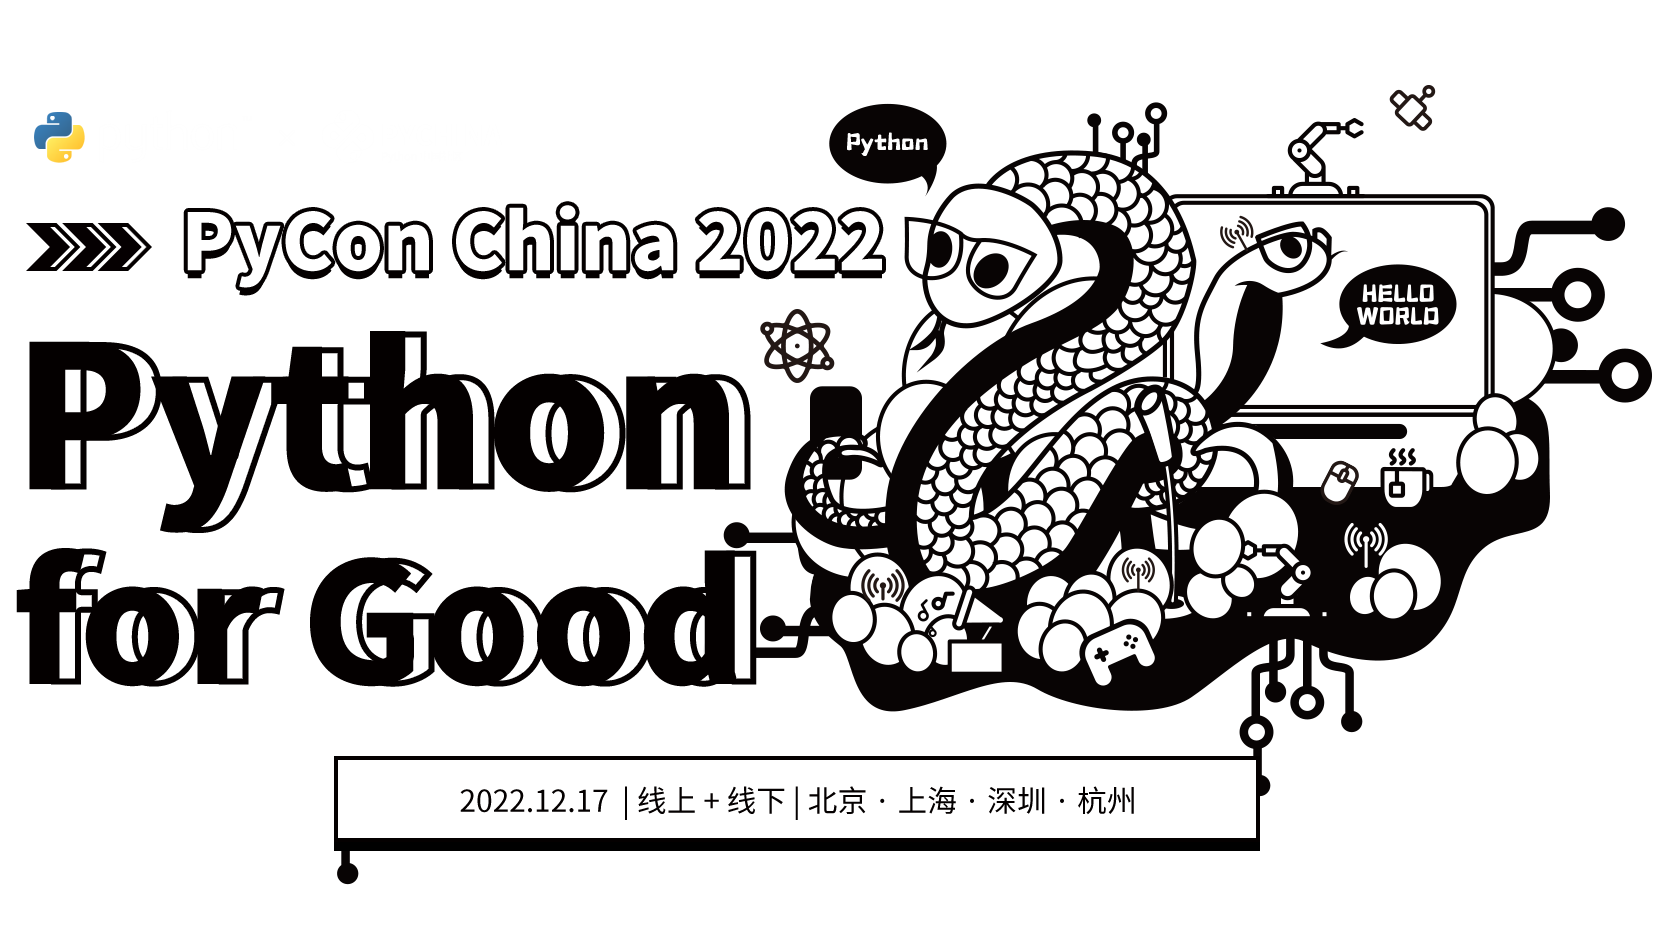 PyConChina 2022